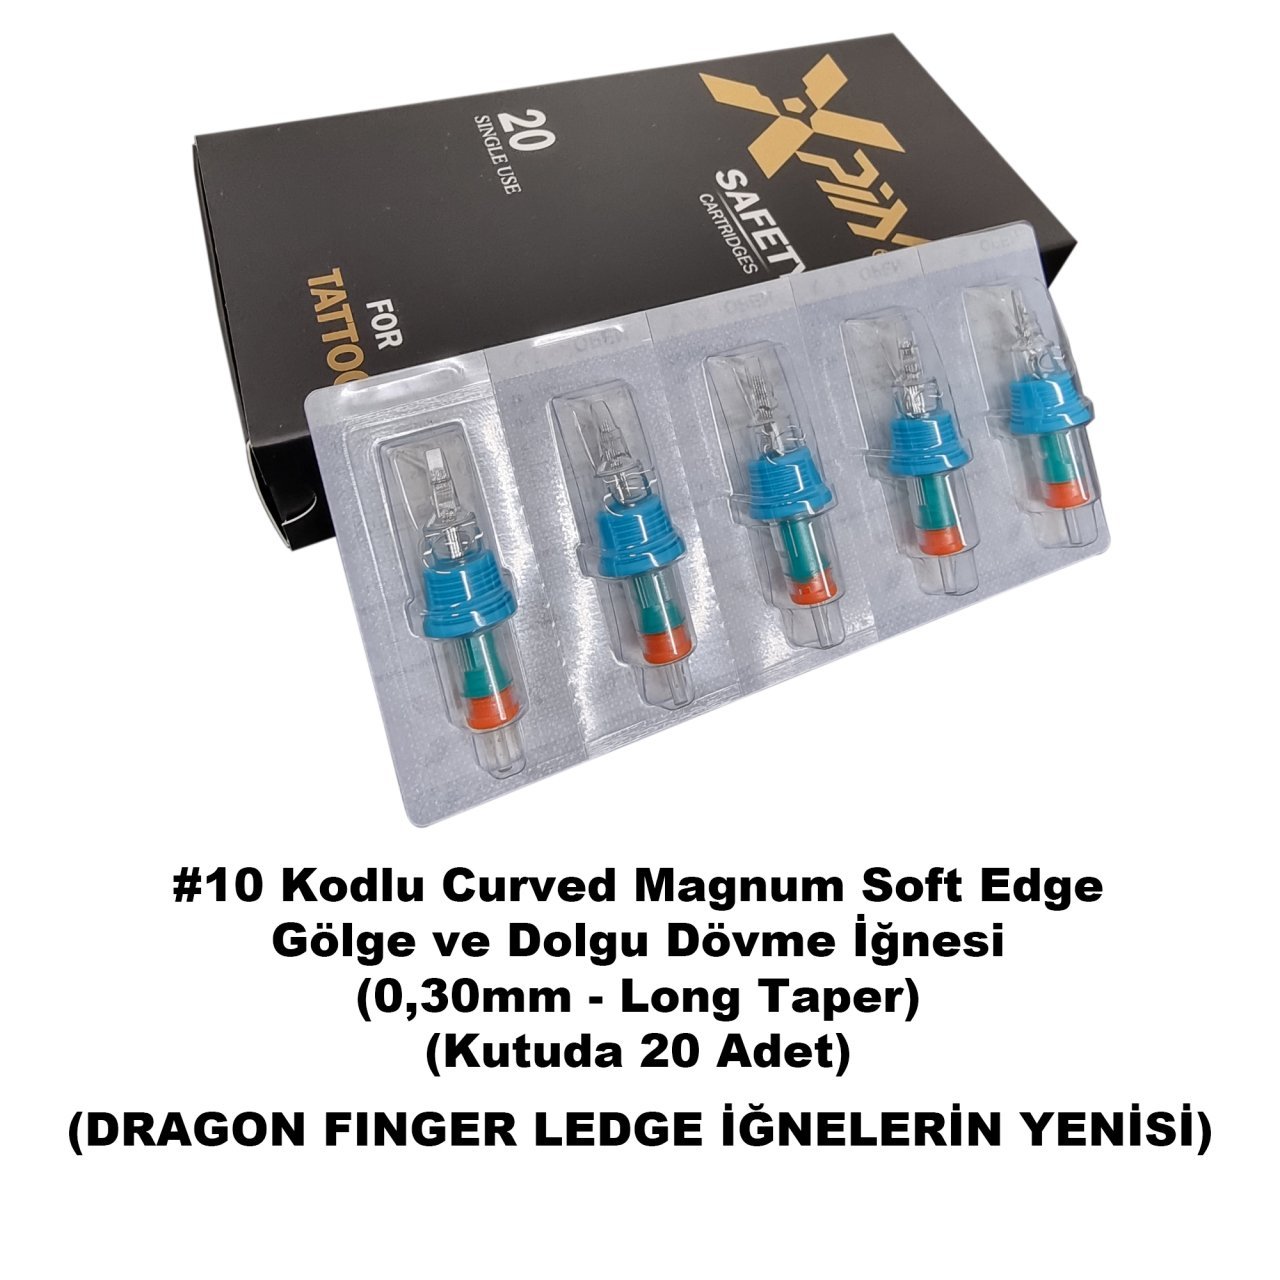 Dragon Xpin Finger Ledge #10 Kodlu Curved Magnum Long Taper Kartuş Dövme İğnesi Gölge ve Dolgu İçin Cartridge İğne SEMLT